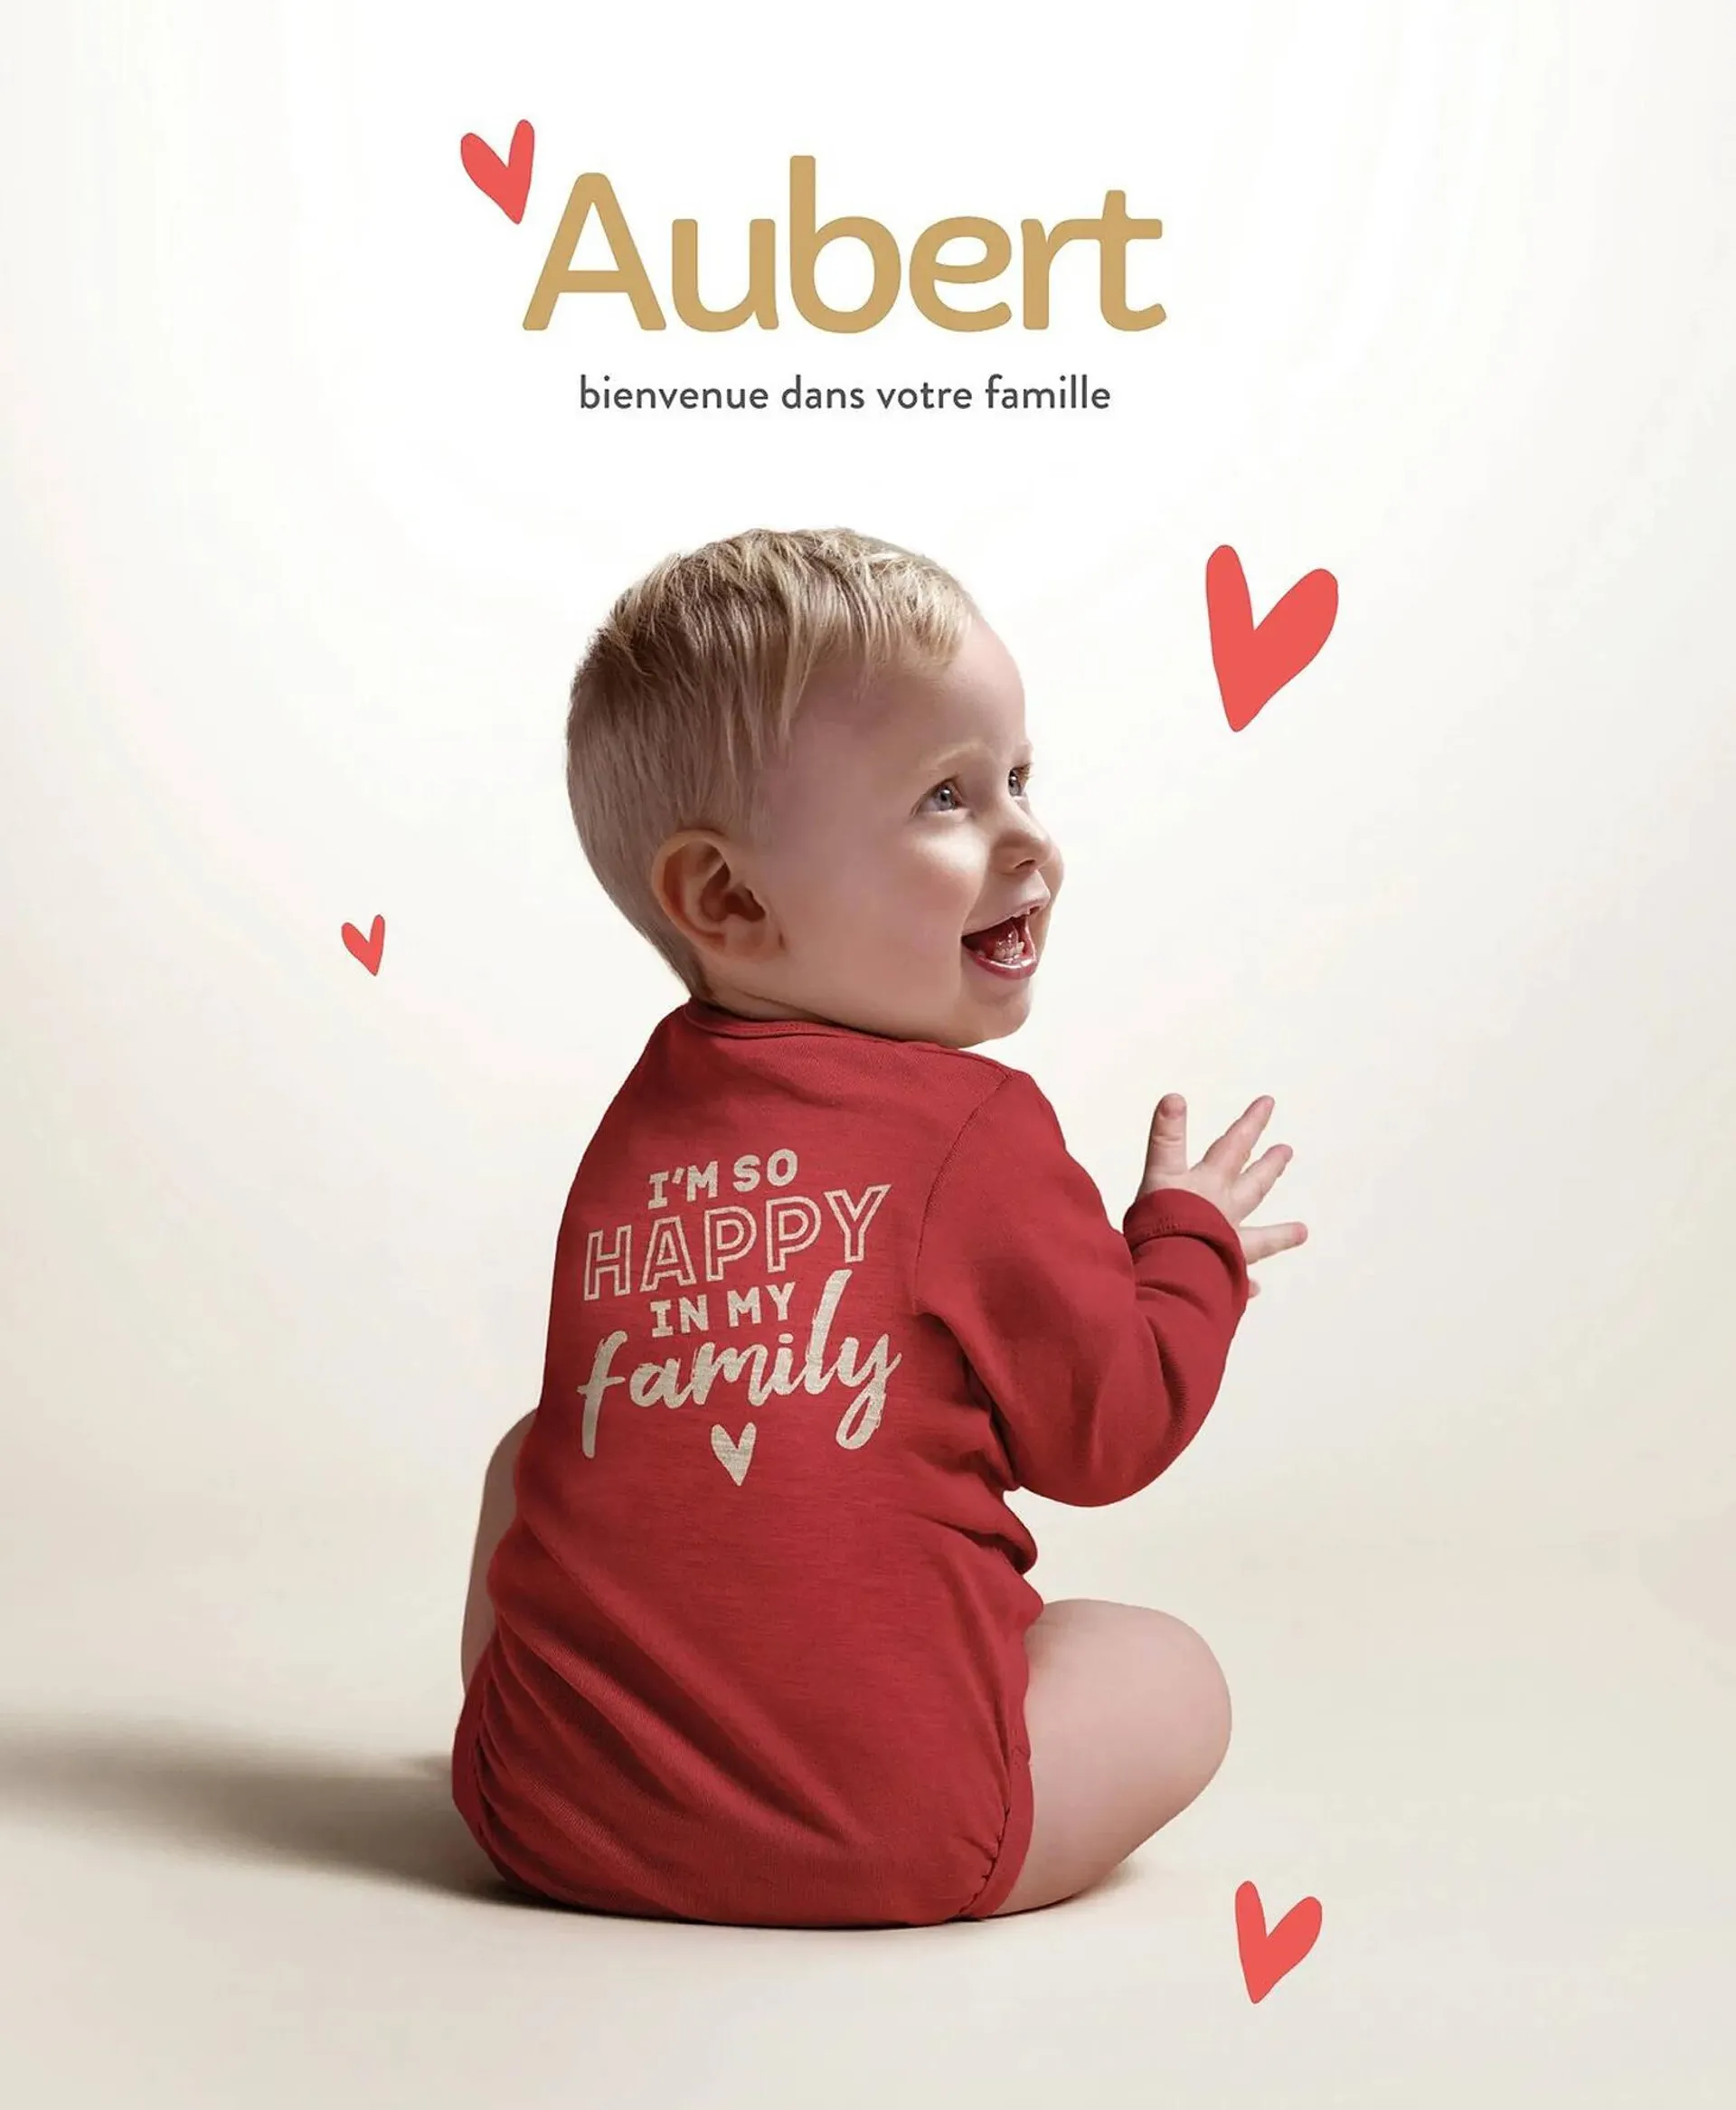 Catalogue Aubert - 1